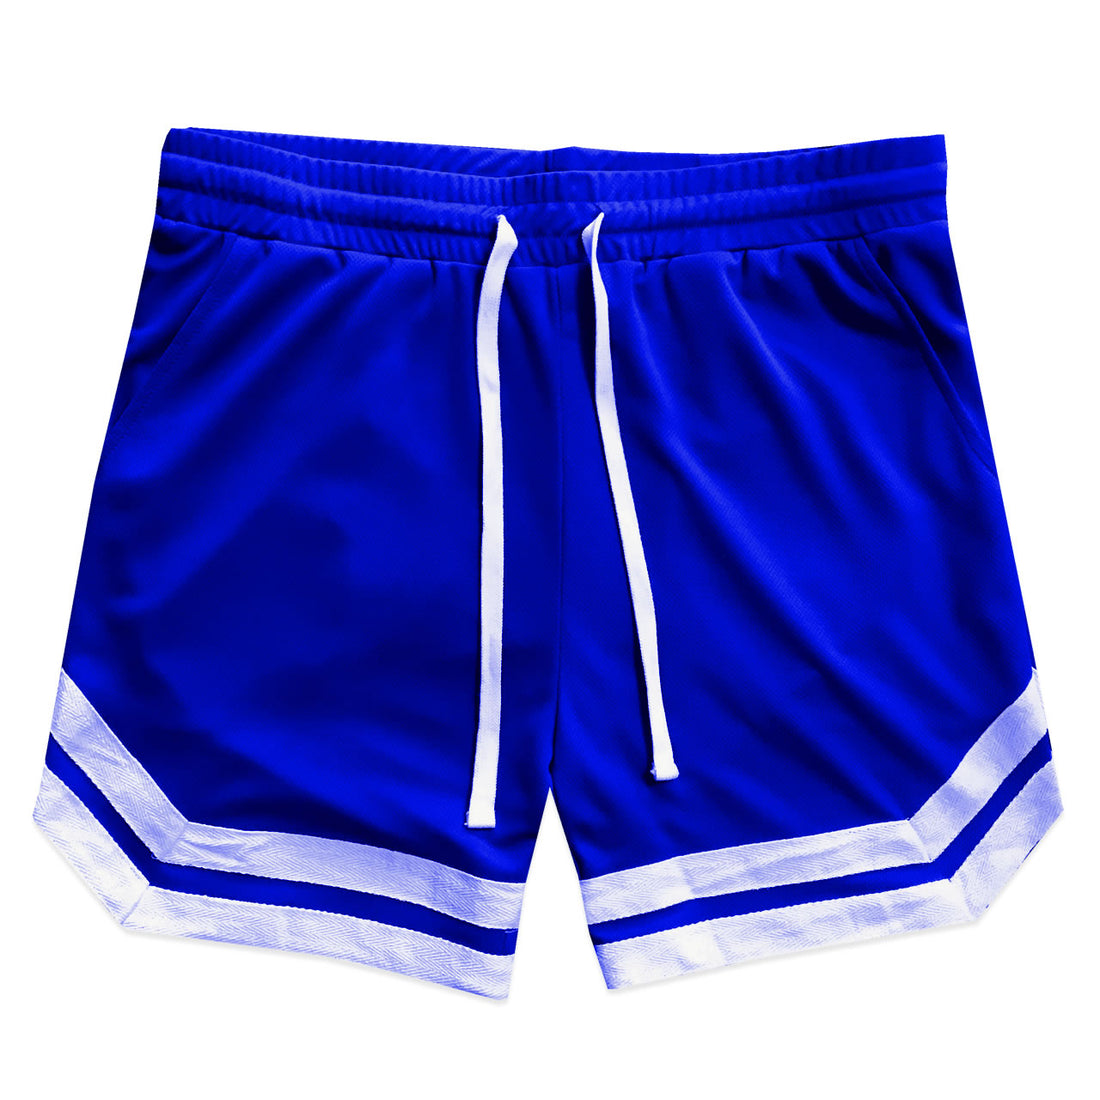 Royal Blue Mens Mesh Basketball Shorts With Pockets